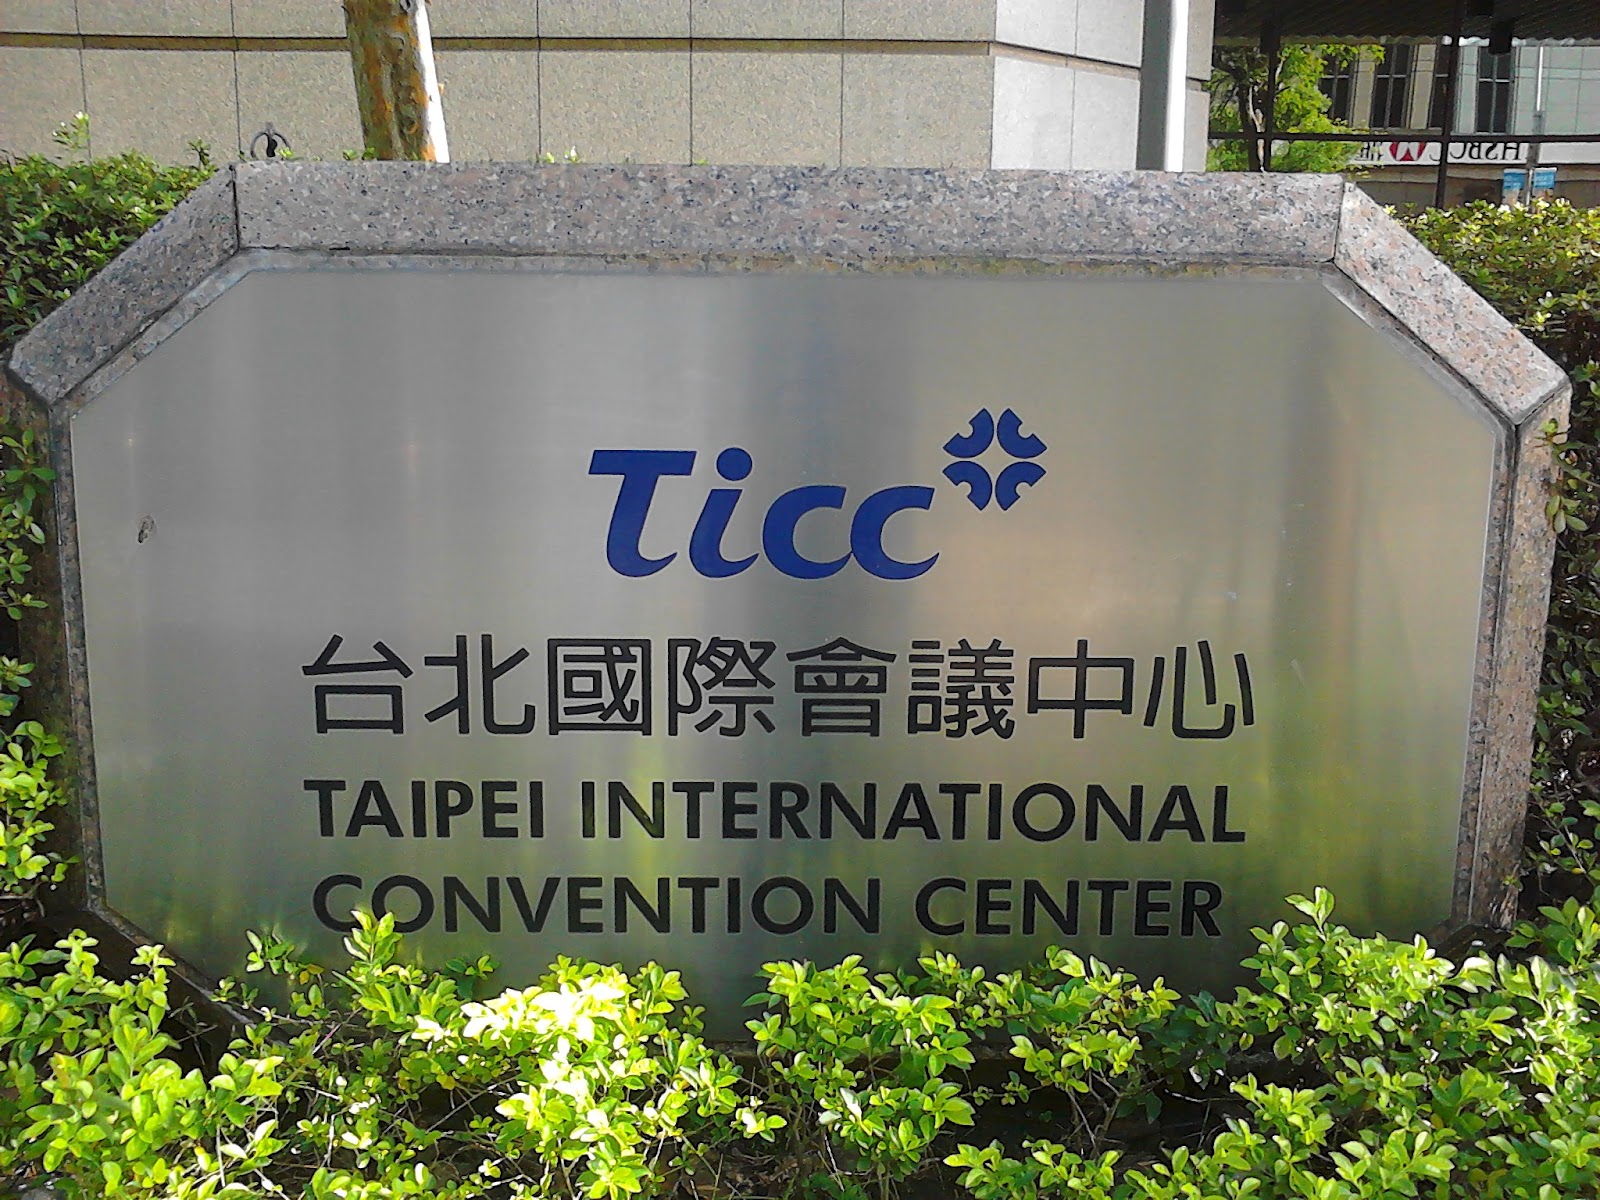 曲辰の幻想蒼穹: Ticc 台北國際會議中心